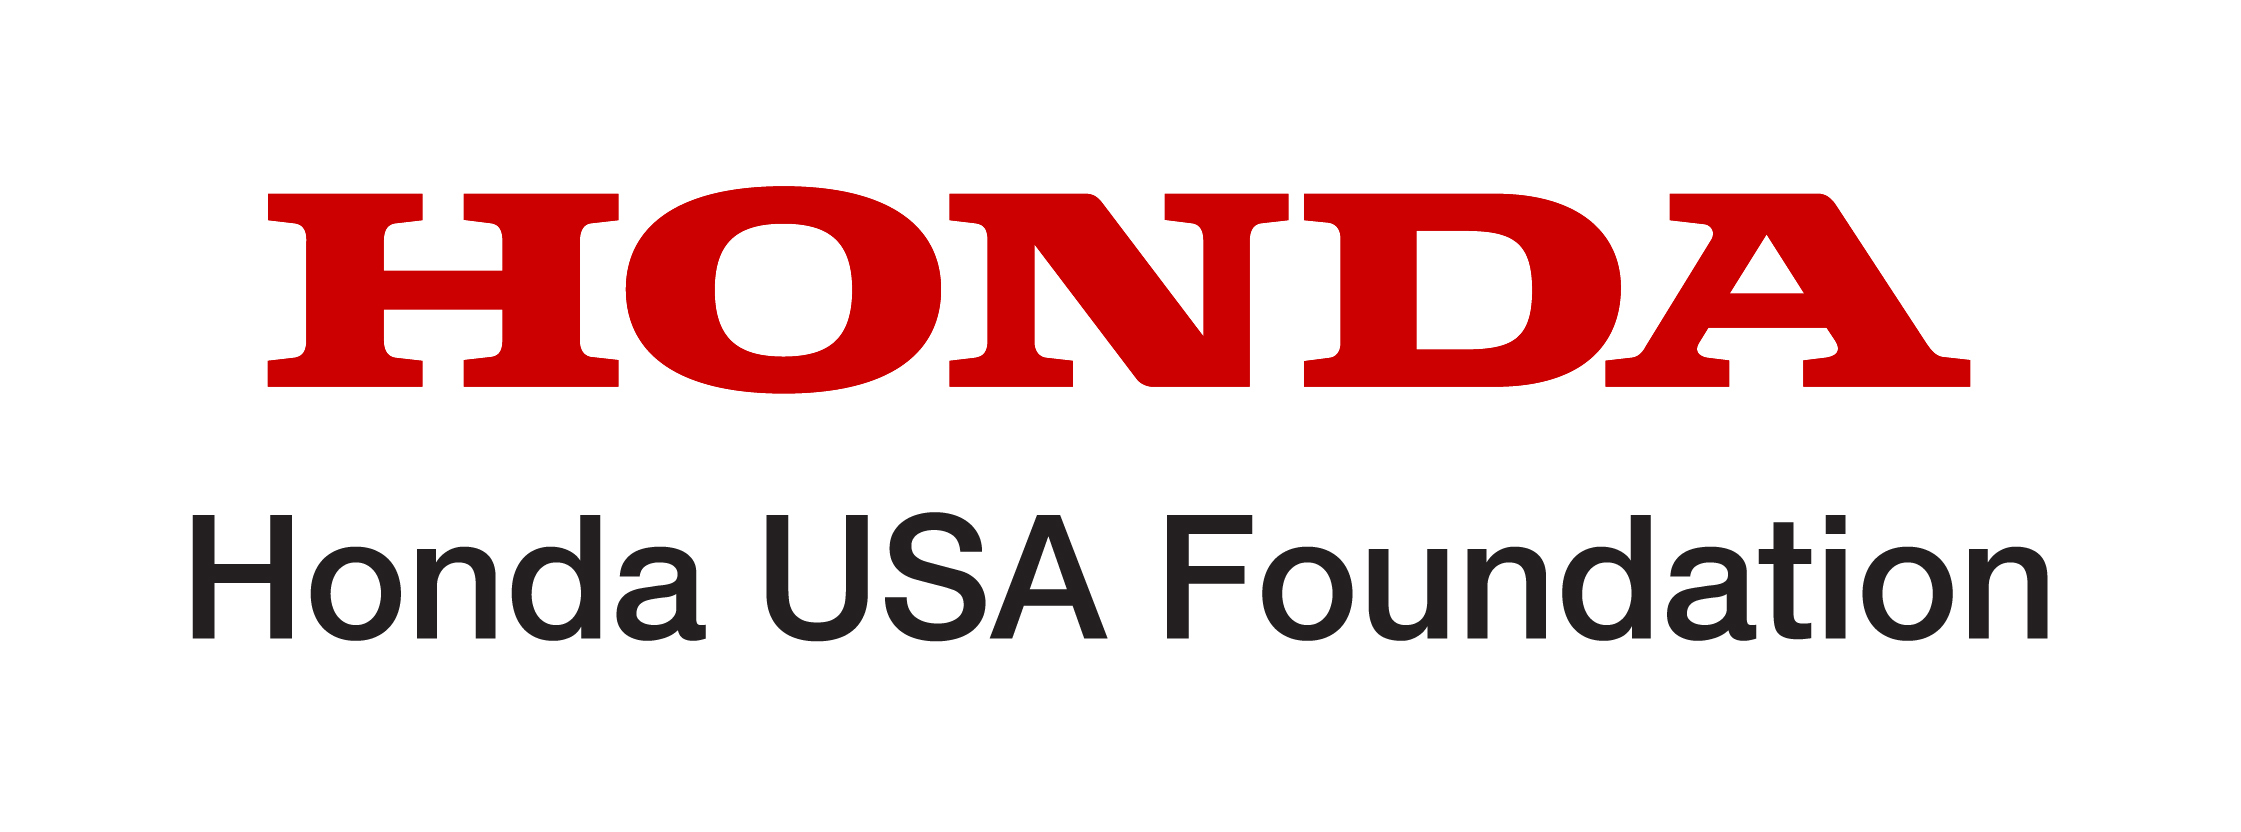 Honda_USA_Foundation_logo_red&black